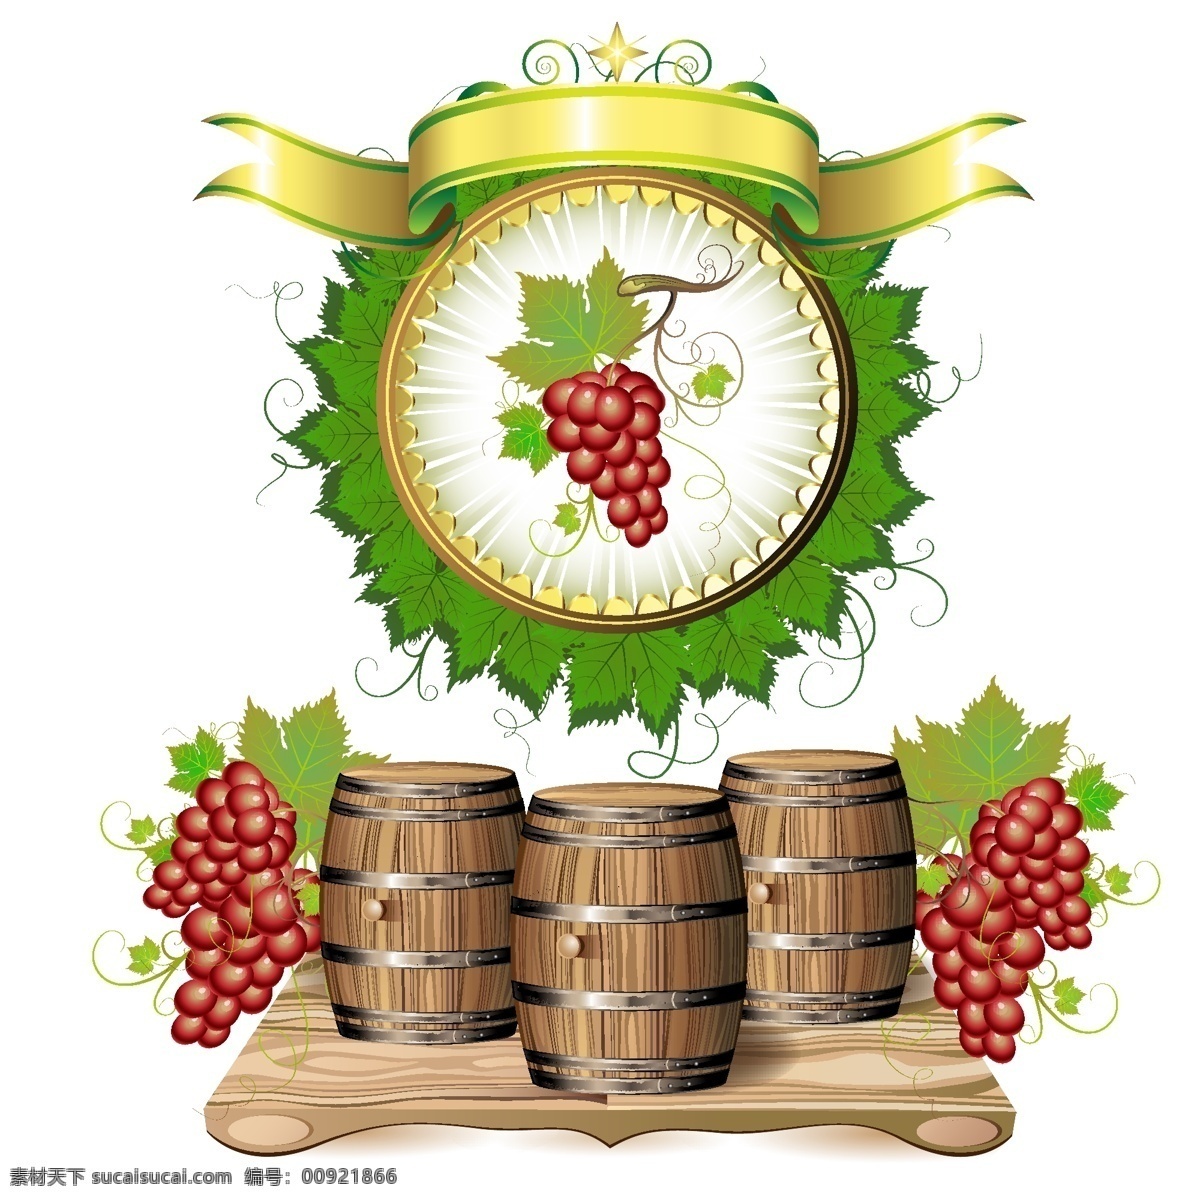 桶 酒 矢量 图形 格式 文件 缎带 矢量食物 水果 葡萄酒 酿造 葡萄酒的生产